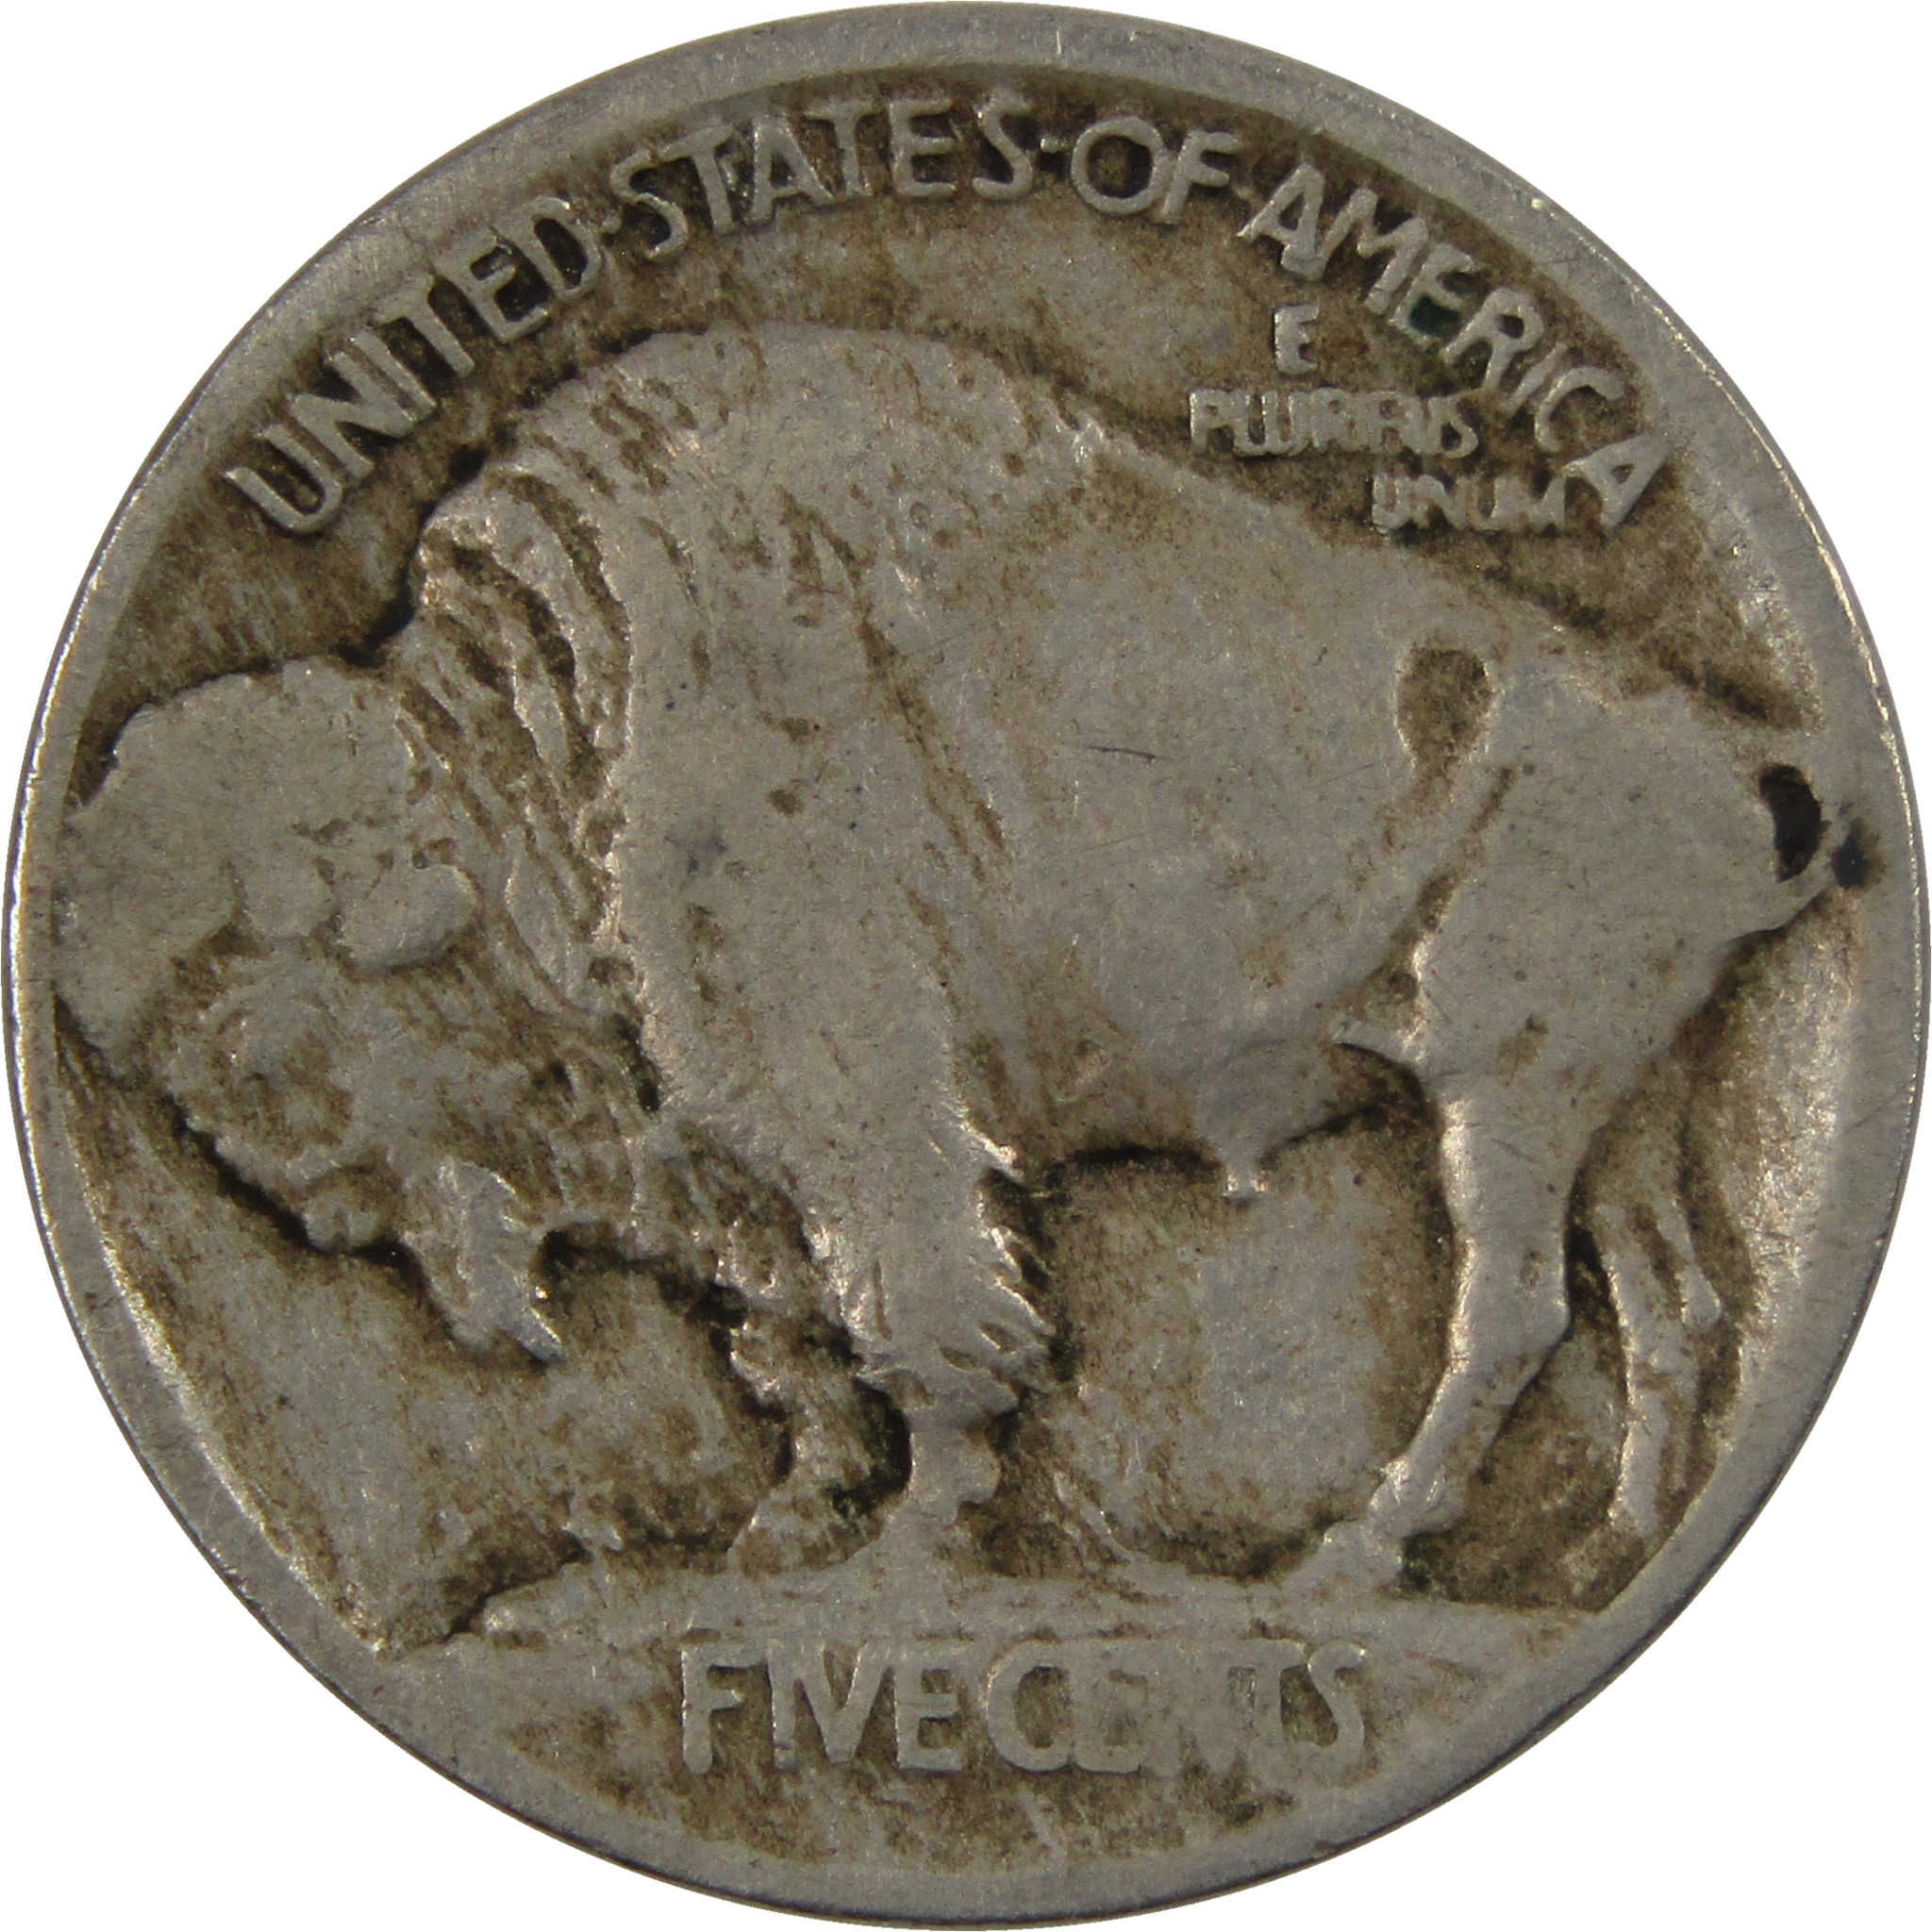 1913 Type 1 Indian Head Buffalo Nickel F Fine 5c Coin SKU:I4179